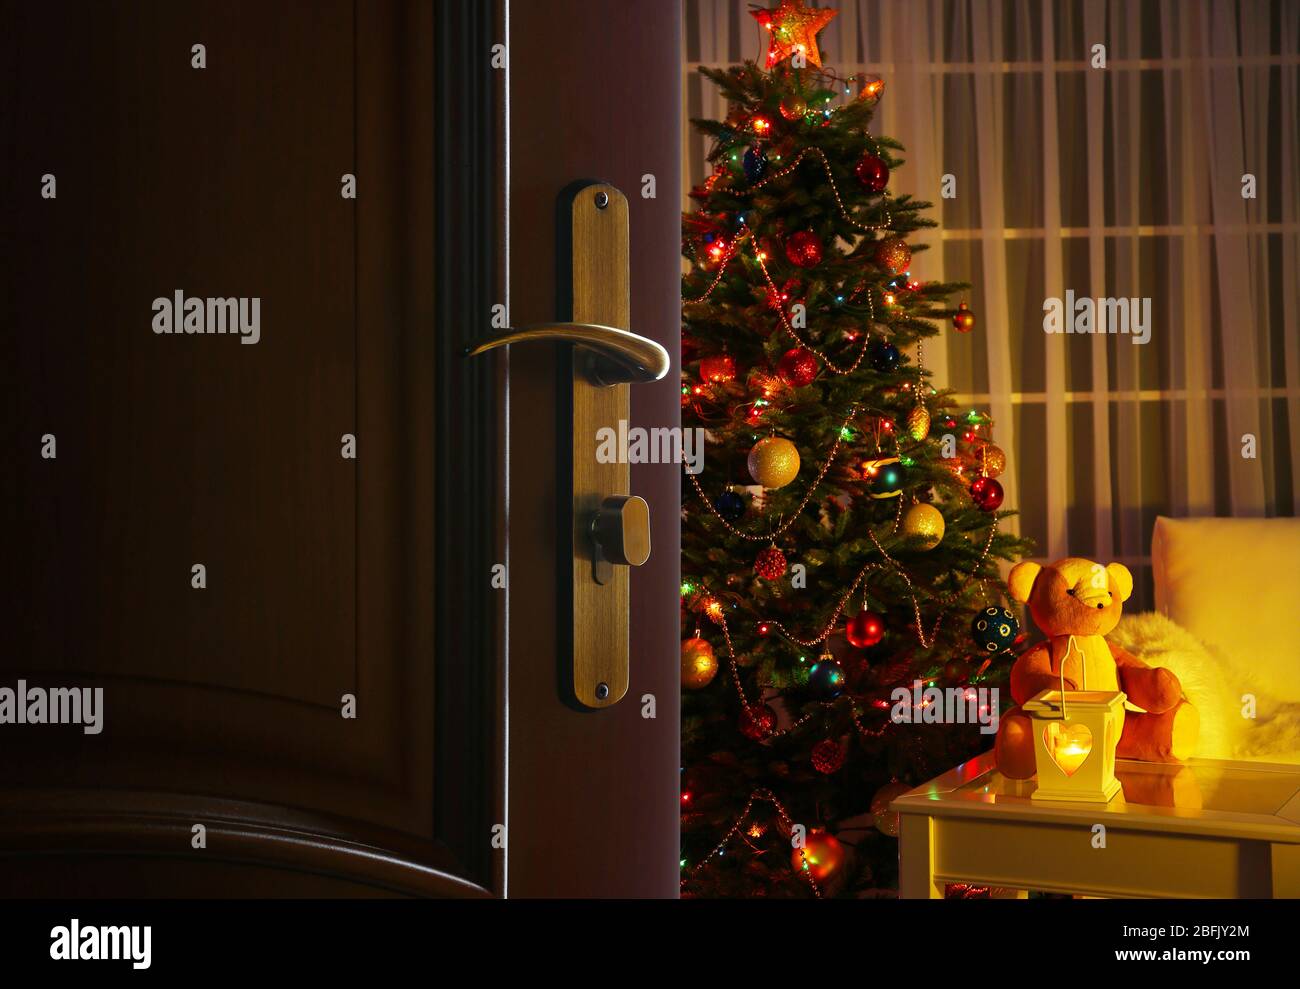 Offene Tür mit geschmücktem Weihnachtsbaum im Zimmer Stockfoto